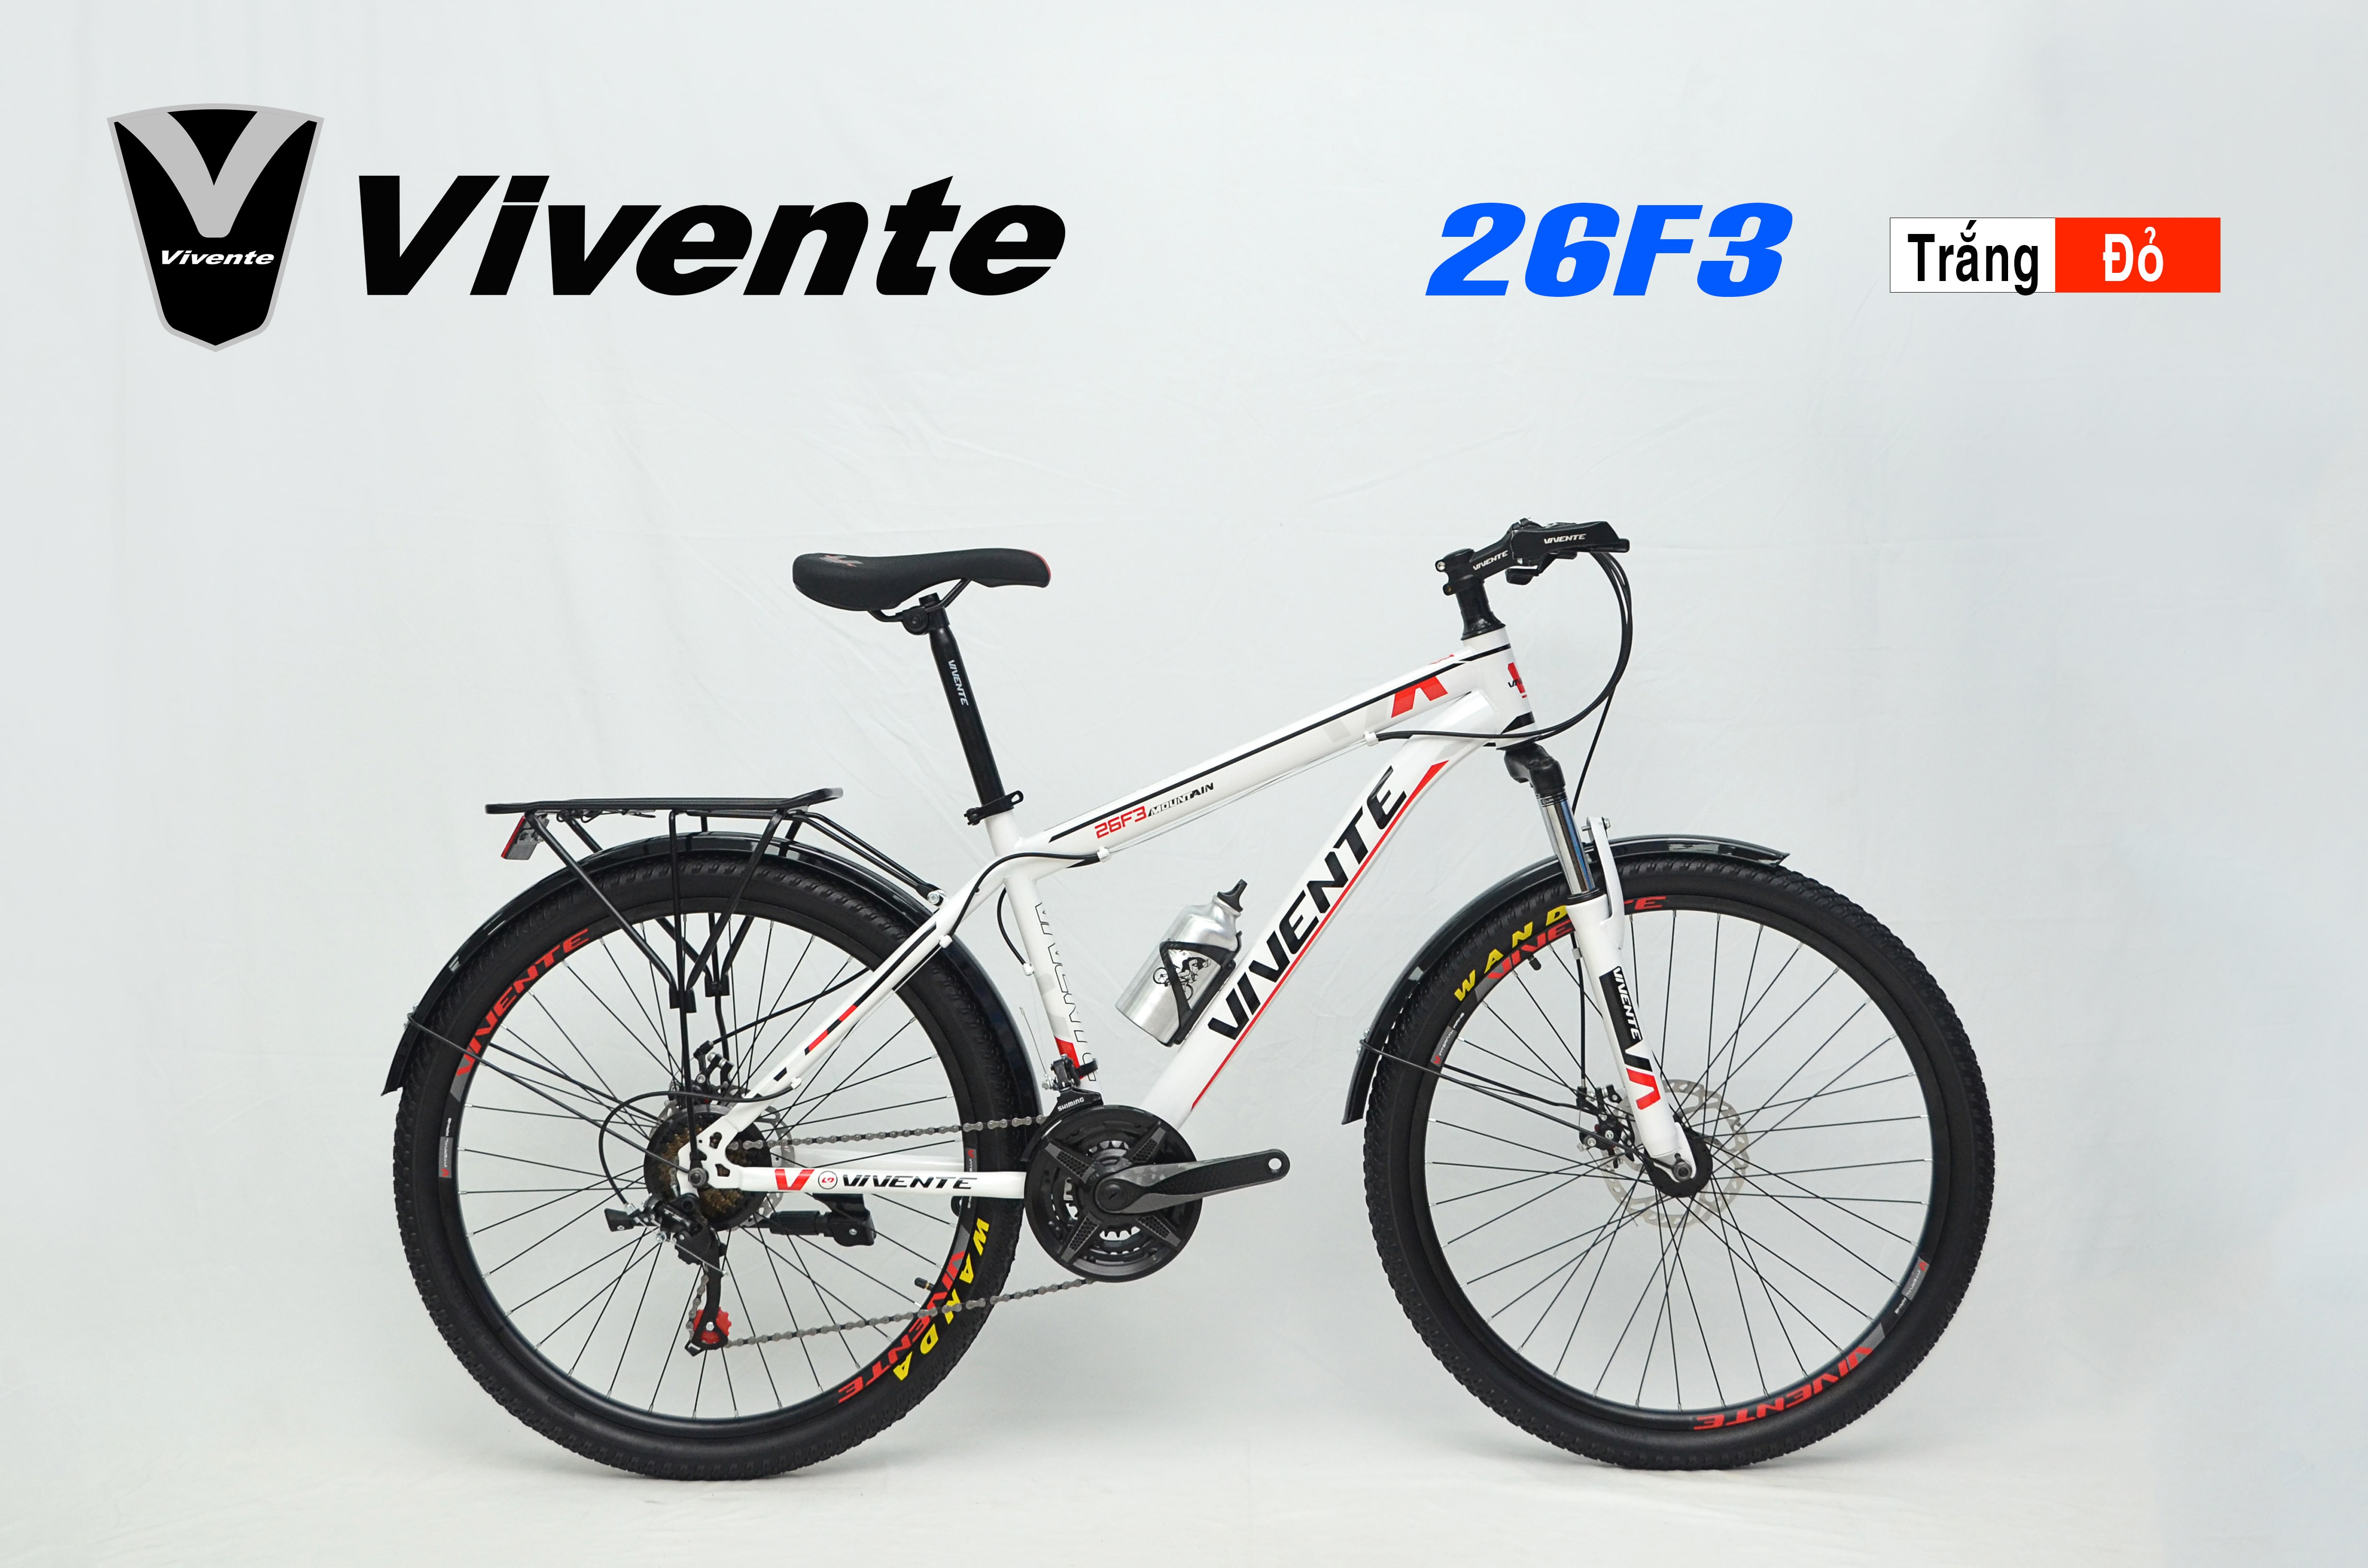 VIVENTE 26F3 là chiếc xe đạp đa năng với thiết kế đẹp mắt và khả năng sử dụng linh hoạt trên mọi địa hình. Với khung xe bền chắc, hệ thống phanh hiệu quả và giảm xóc tốt, chiếc xe này sẽ là người bạn đồng hành đáng tin cậy cho những chuyến đi phượt.